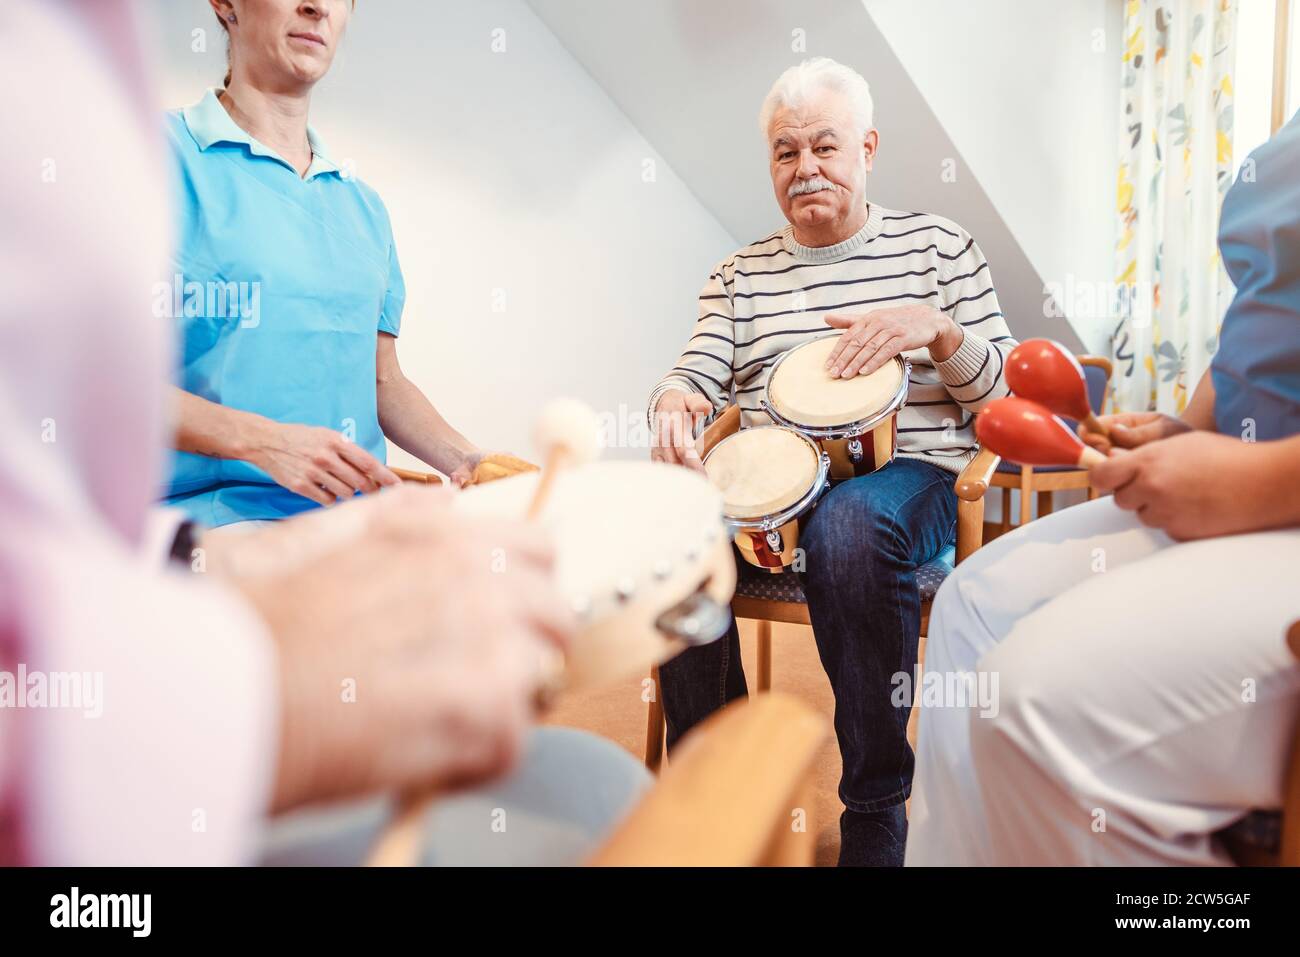 Les personnes âgées en maison de soins infirmiers de faire de la musique avec instruments rythmiques Banque D'Images